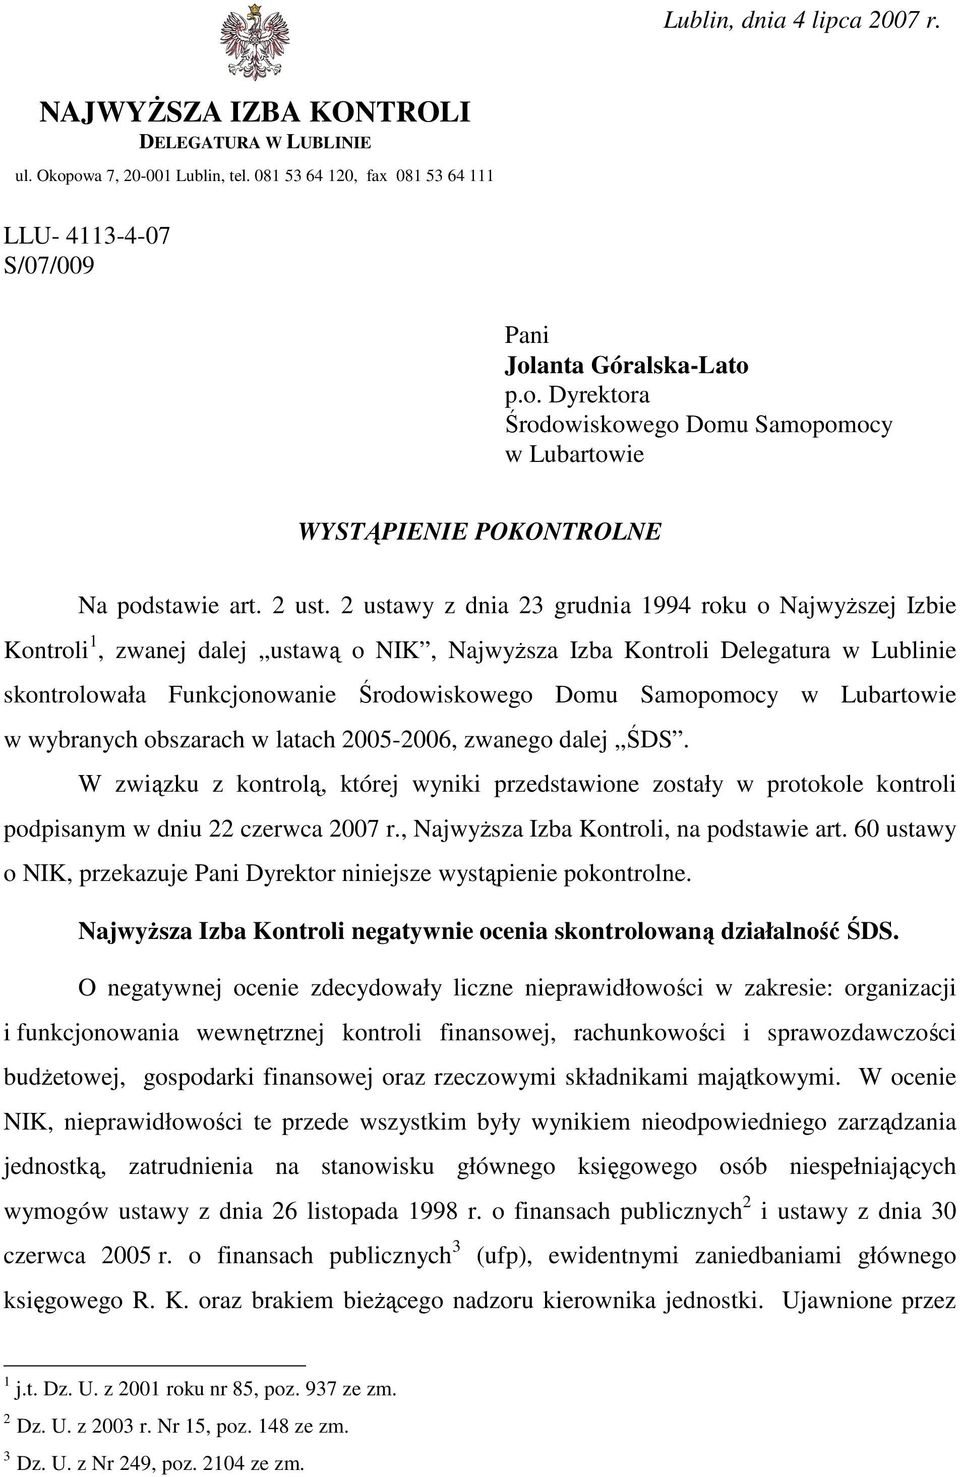 2 ustawy z dnia 23 grudnia 1994 roku o NajwyŜszej Izbie Kontroli 1, zwanej dalej ustawą o NIK, NajwyŜsza Izba Kontroli Delegatura w Lublinie skontrolowała Funkcjonowanie Środowiskowego Domu